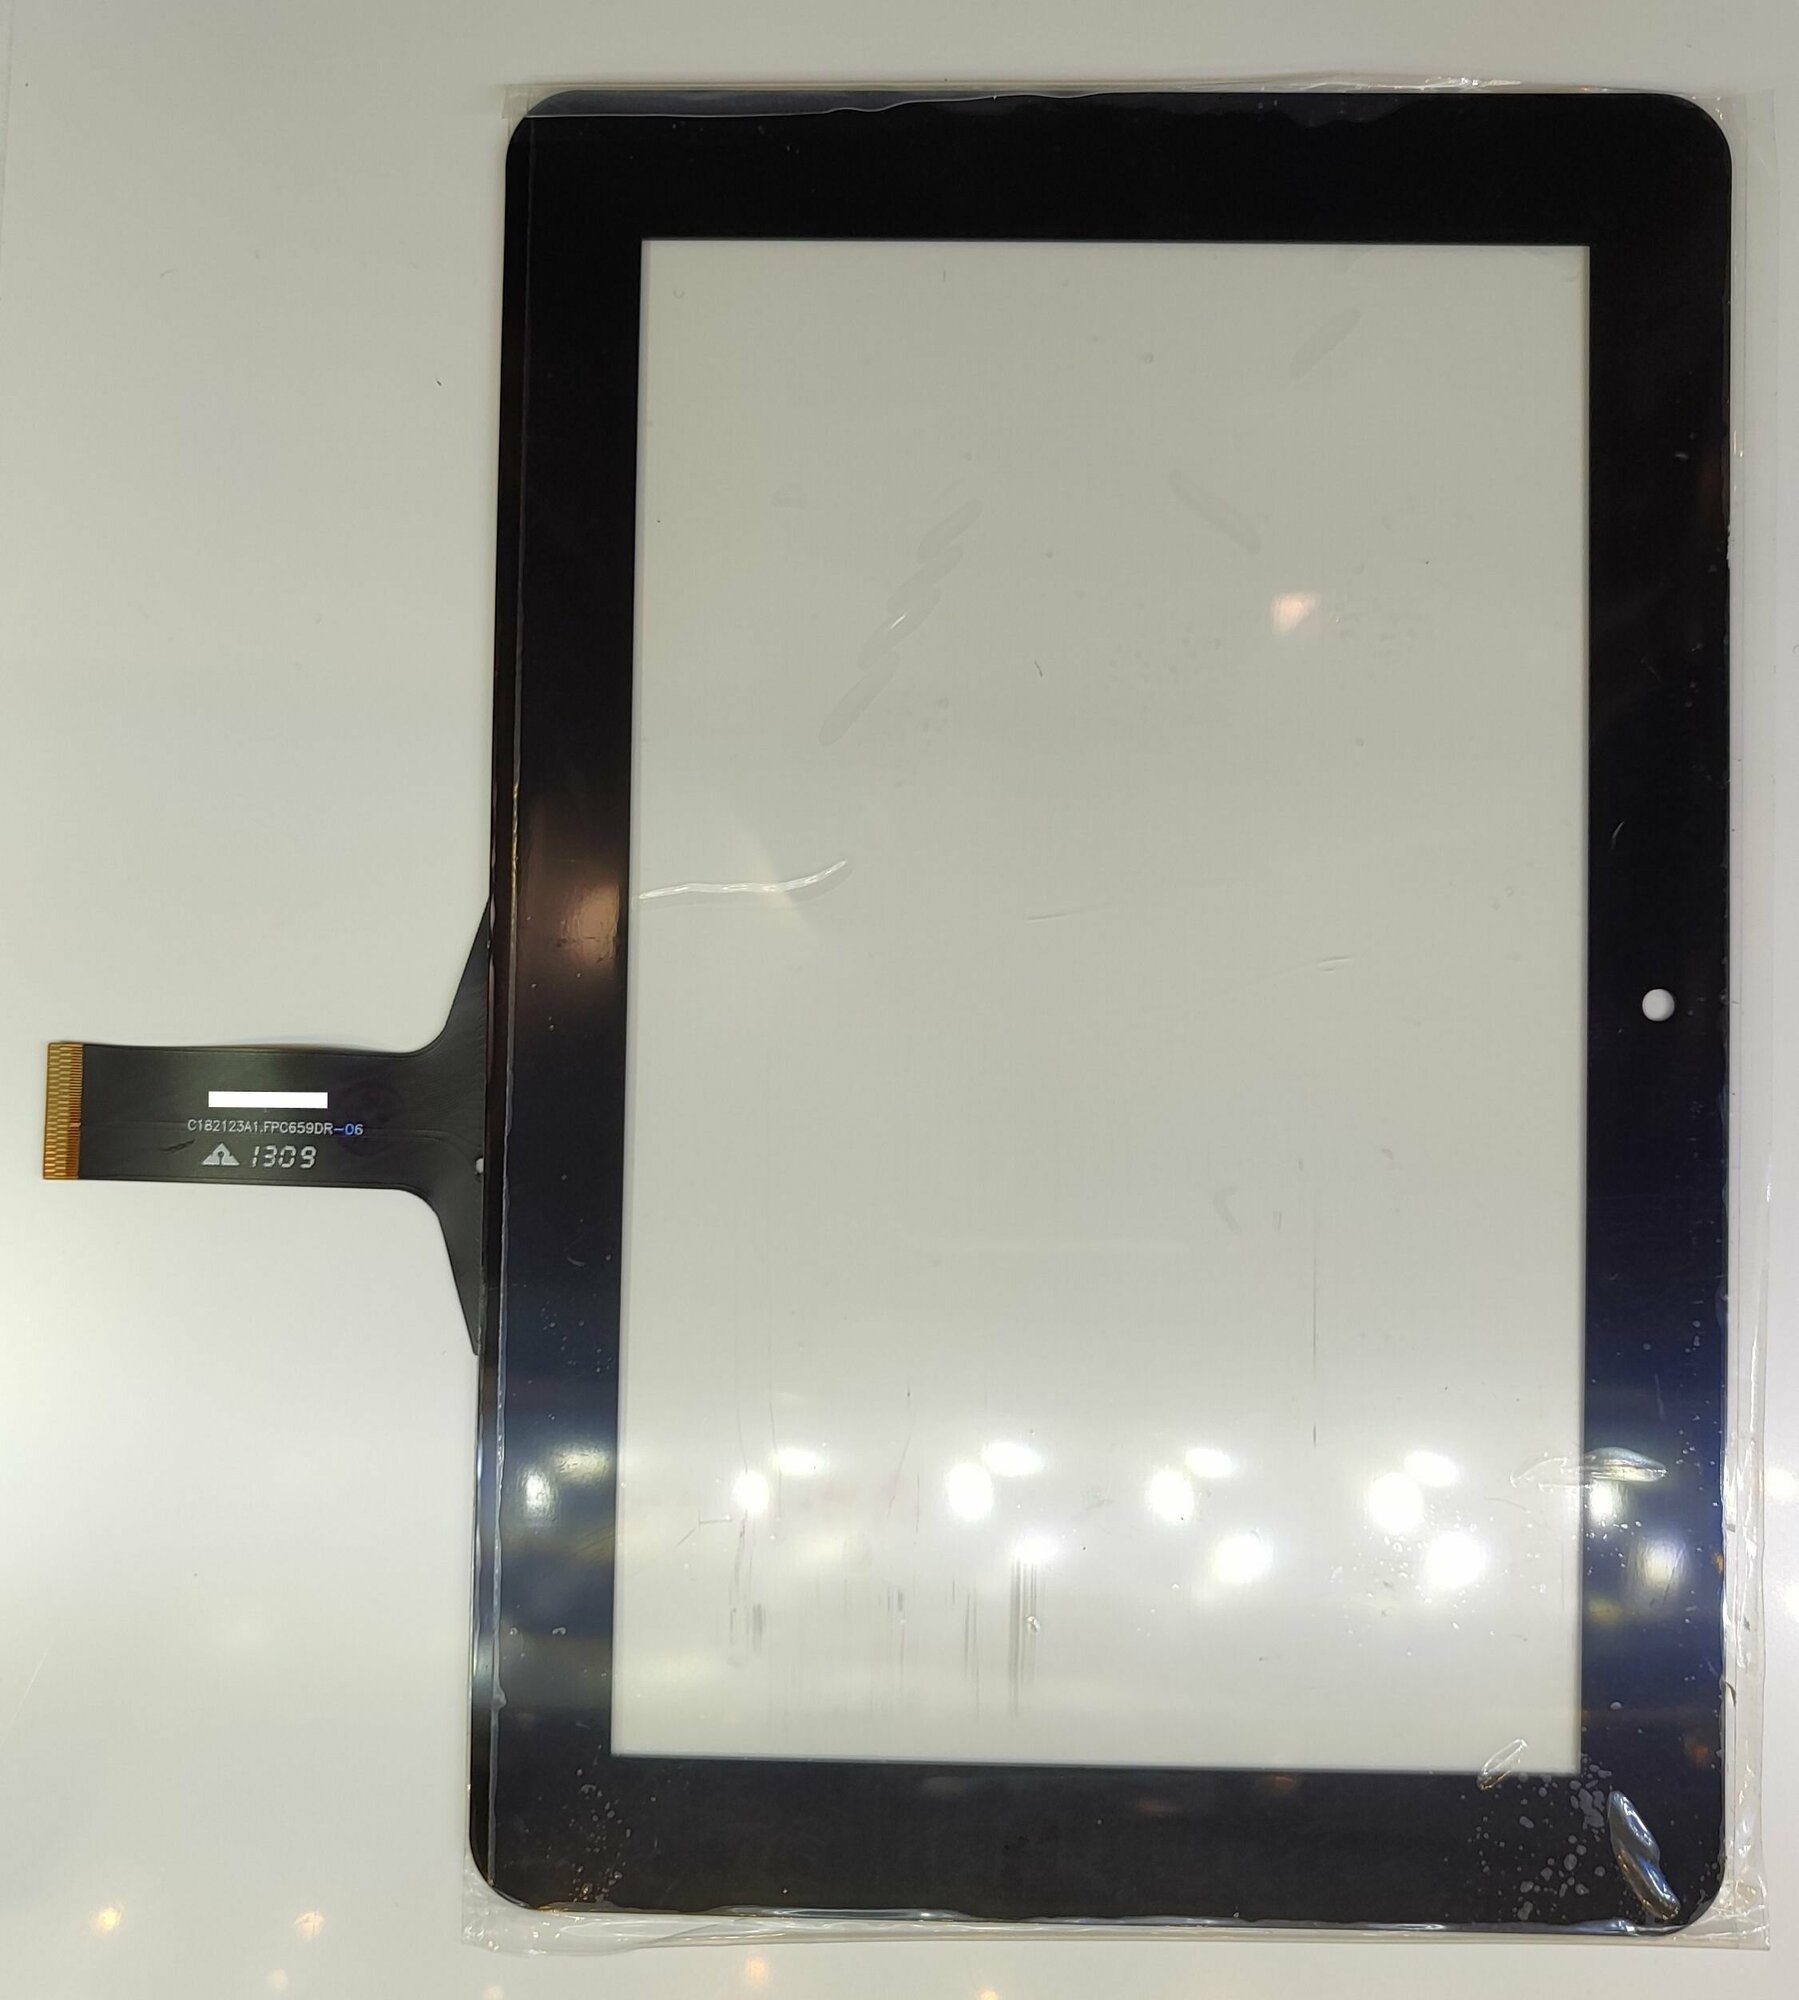 Тачскрин сенсор touchscreen сенсорный экран стекло для планшета Ainol novo 7 Venus c182123a1. fpc659dr-06